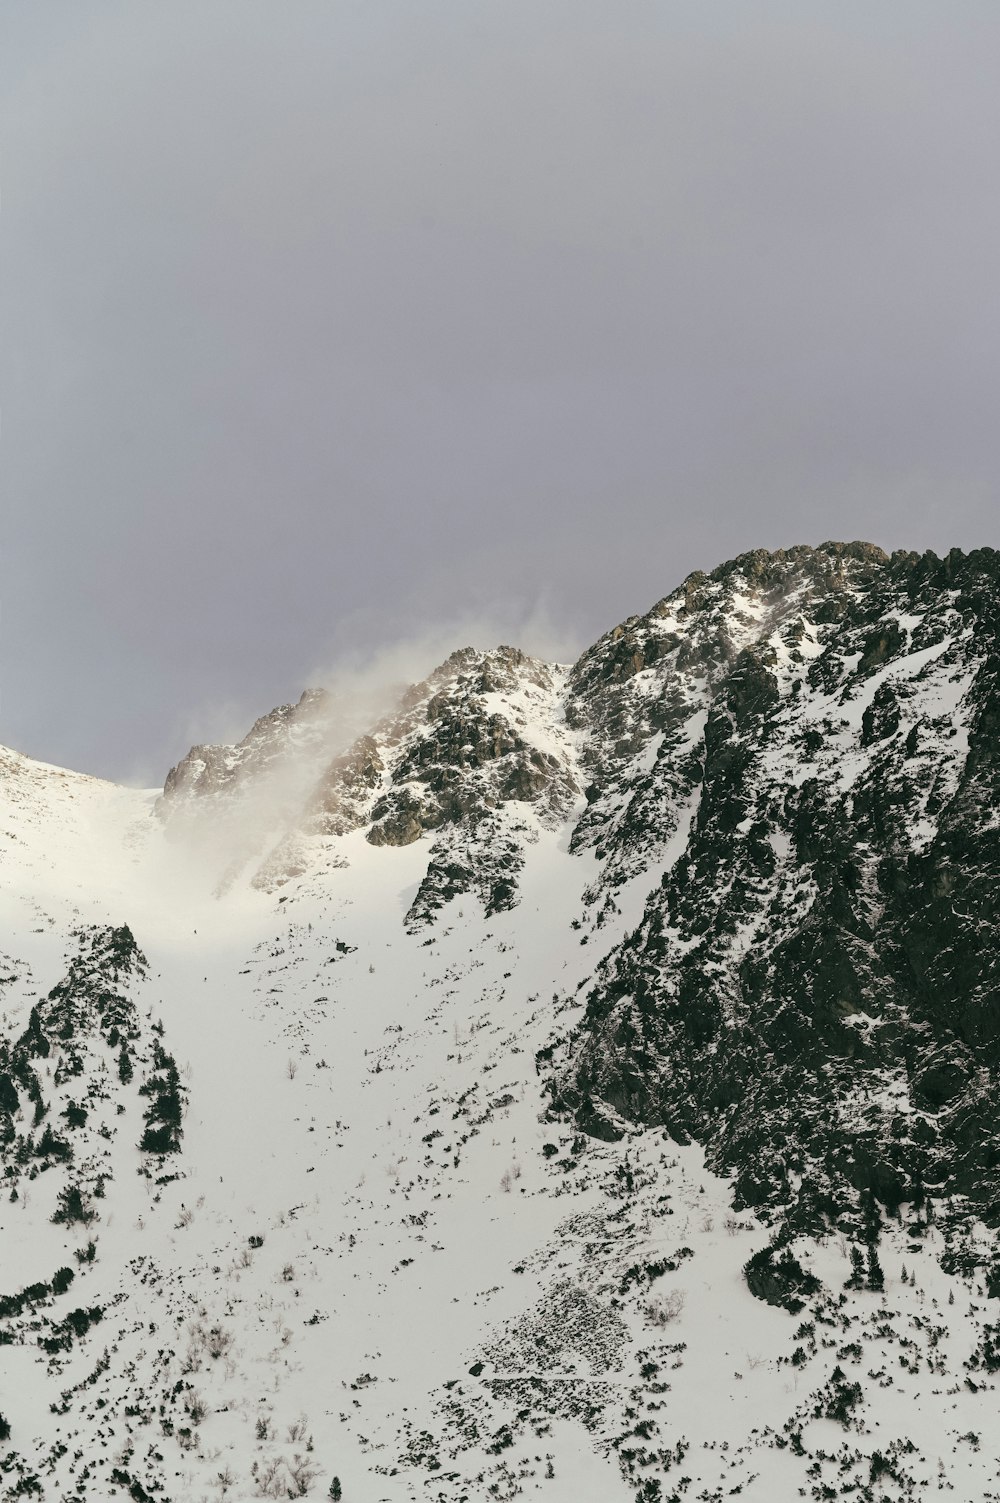 Una montagna coperta di neve con una nuvola nel cielo